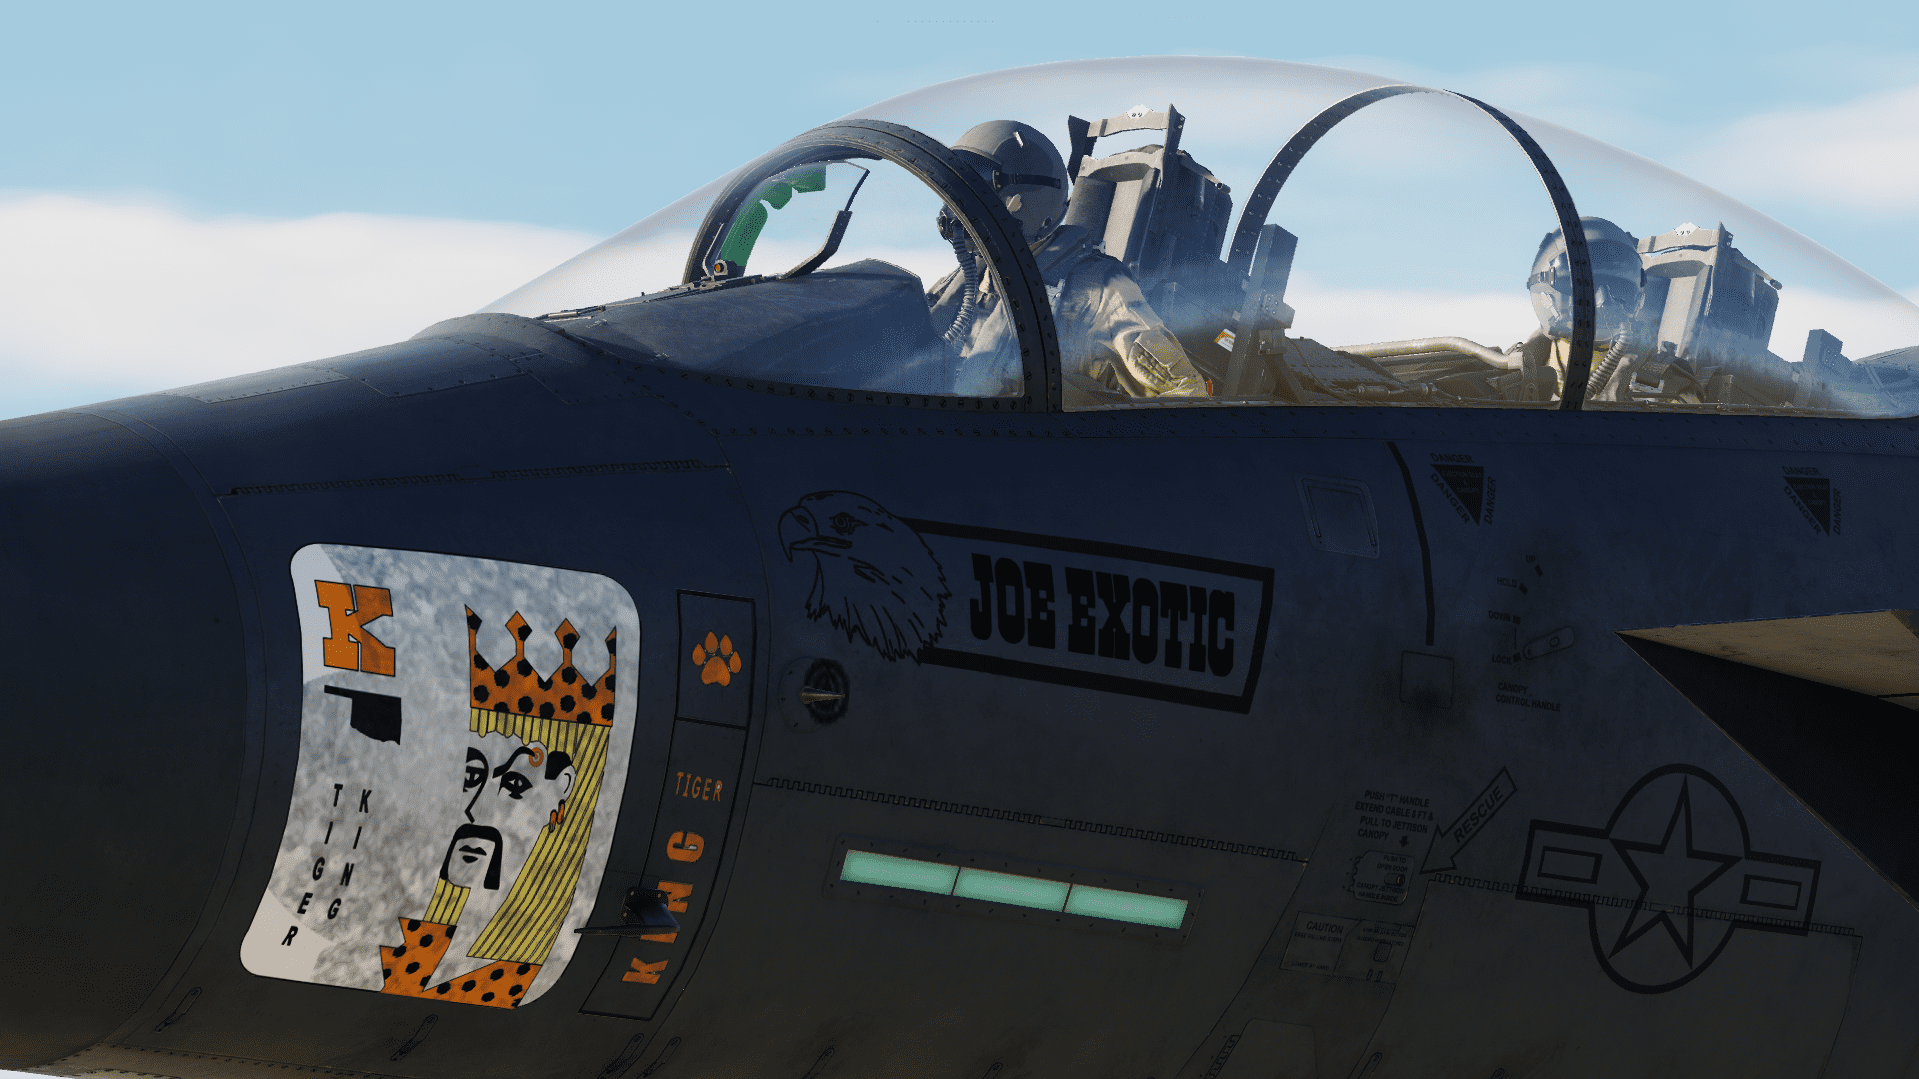 F-15E Strike eagle LN 91-604 "Joe Exotic"